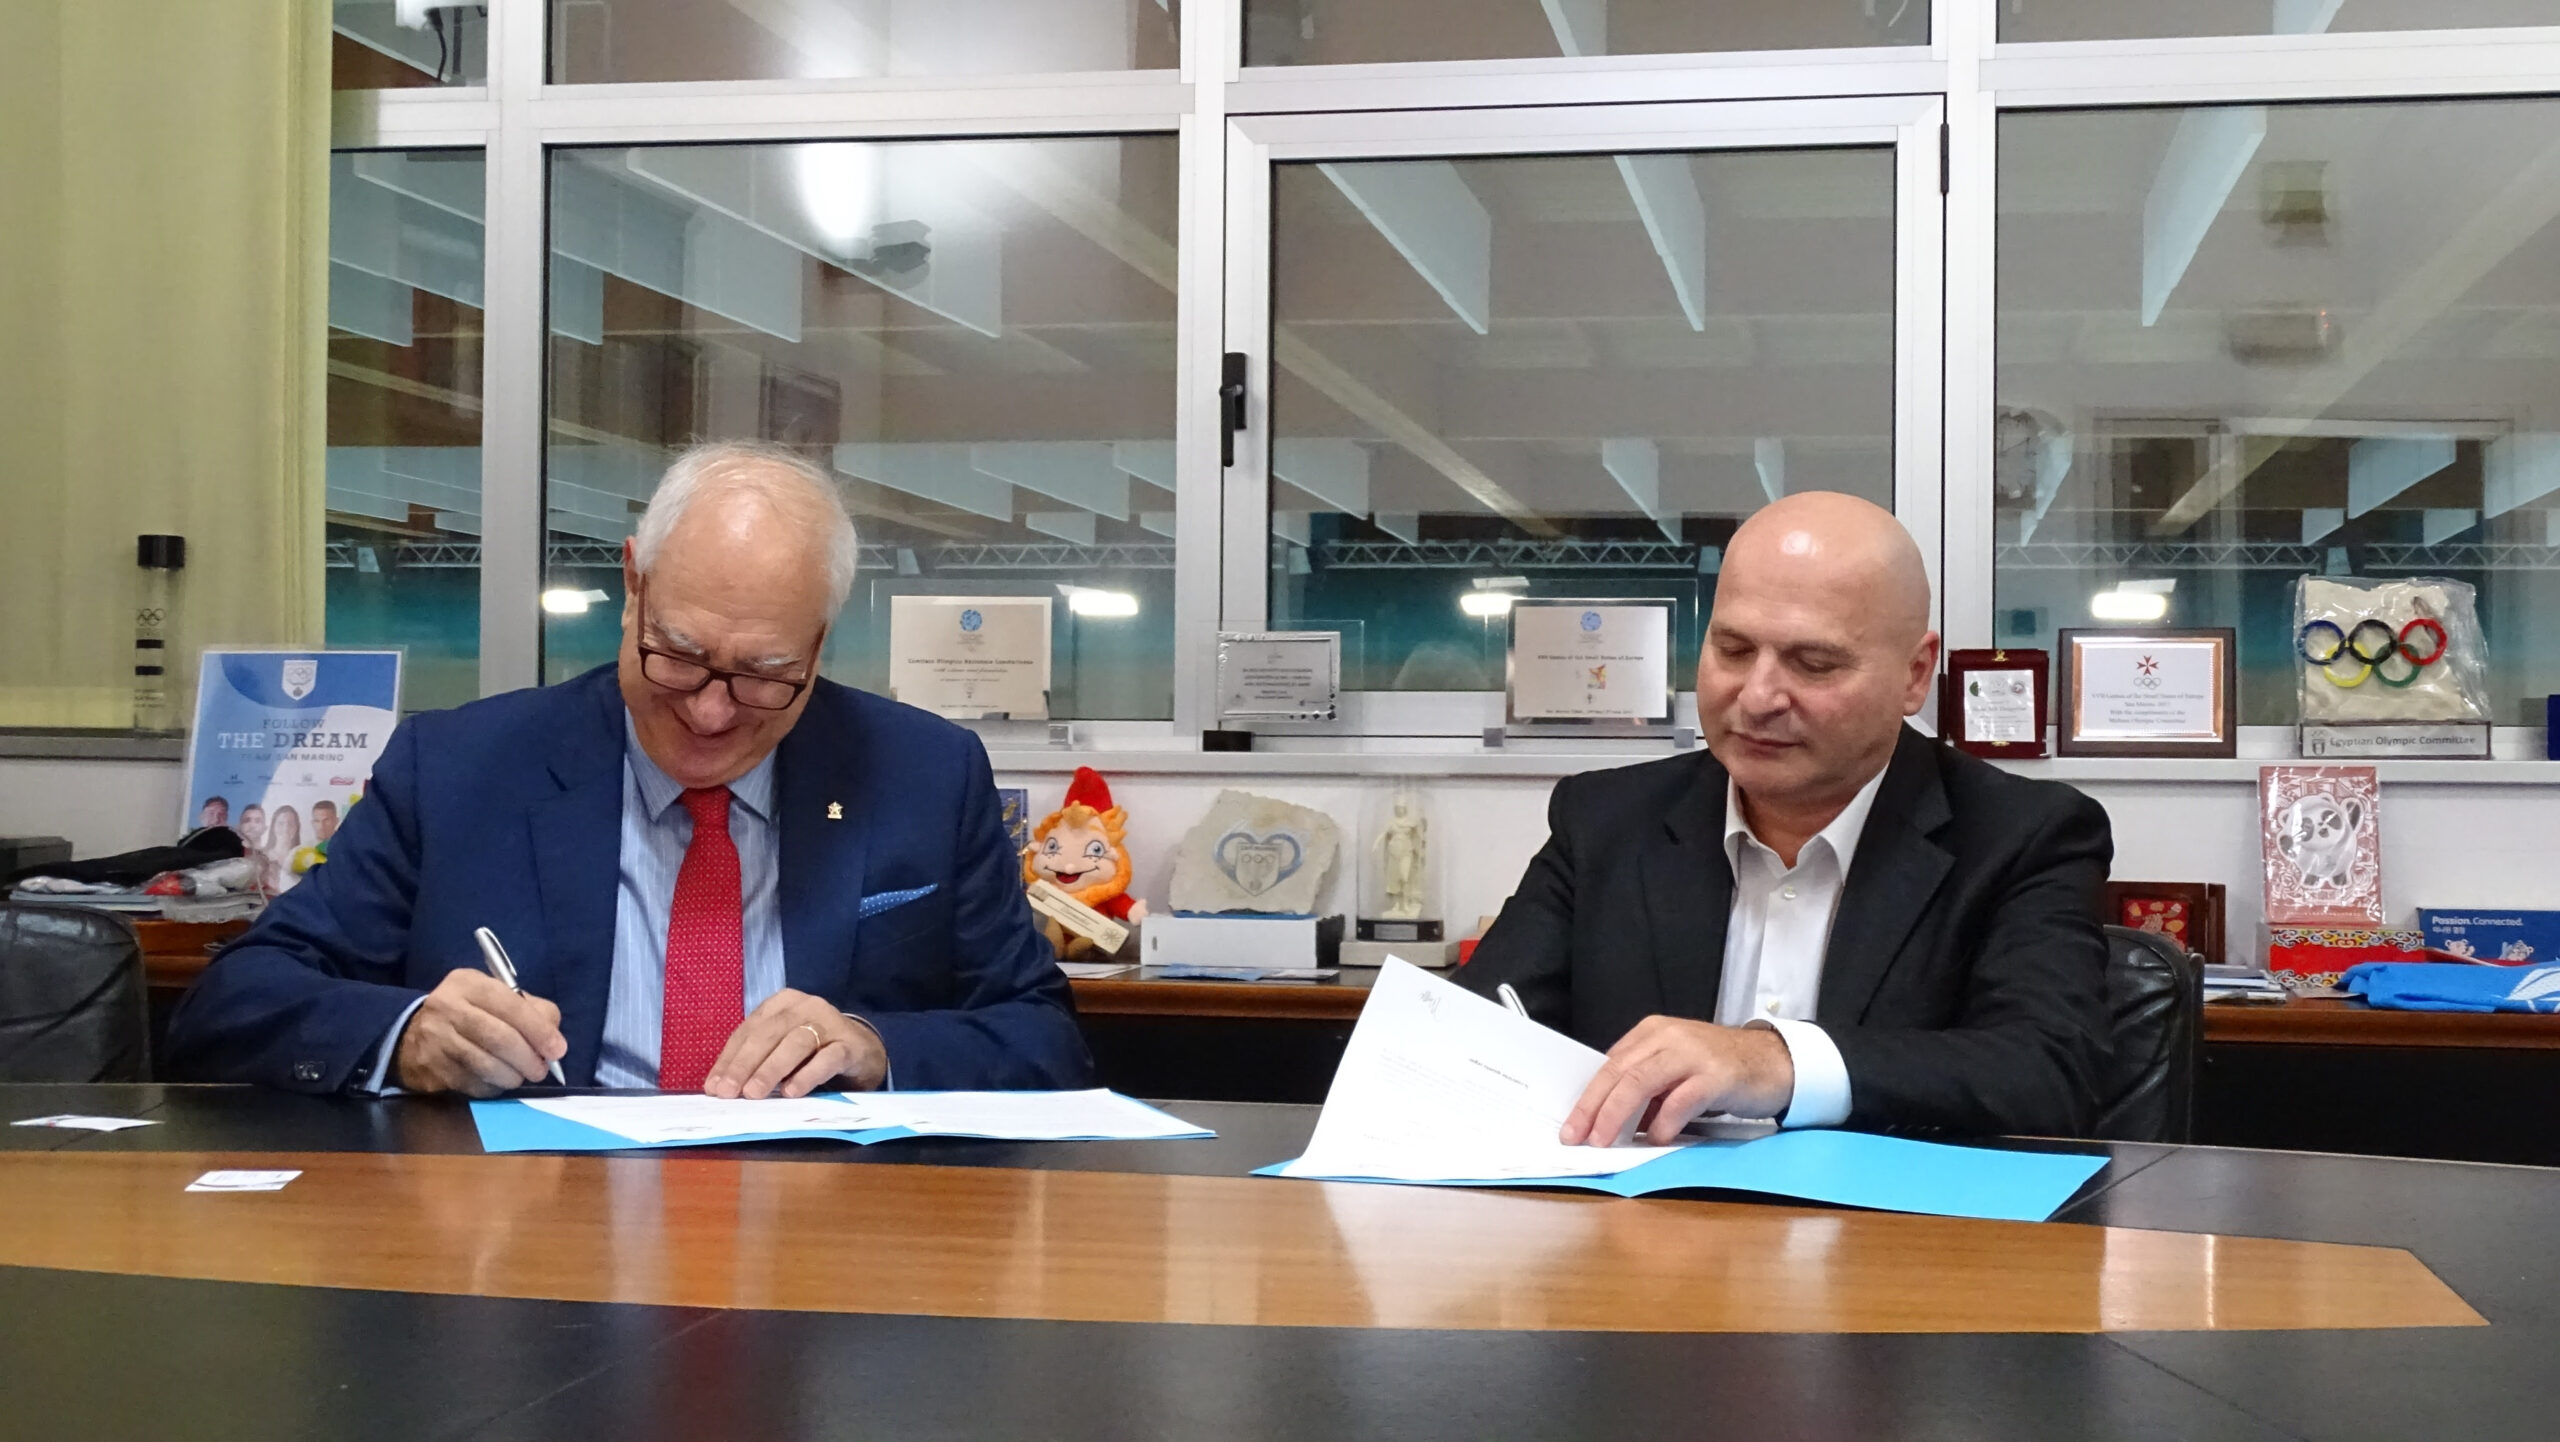 Accordo di mutua collaborazione sportiva tra le Federscacchi di San Marino e Italia